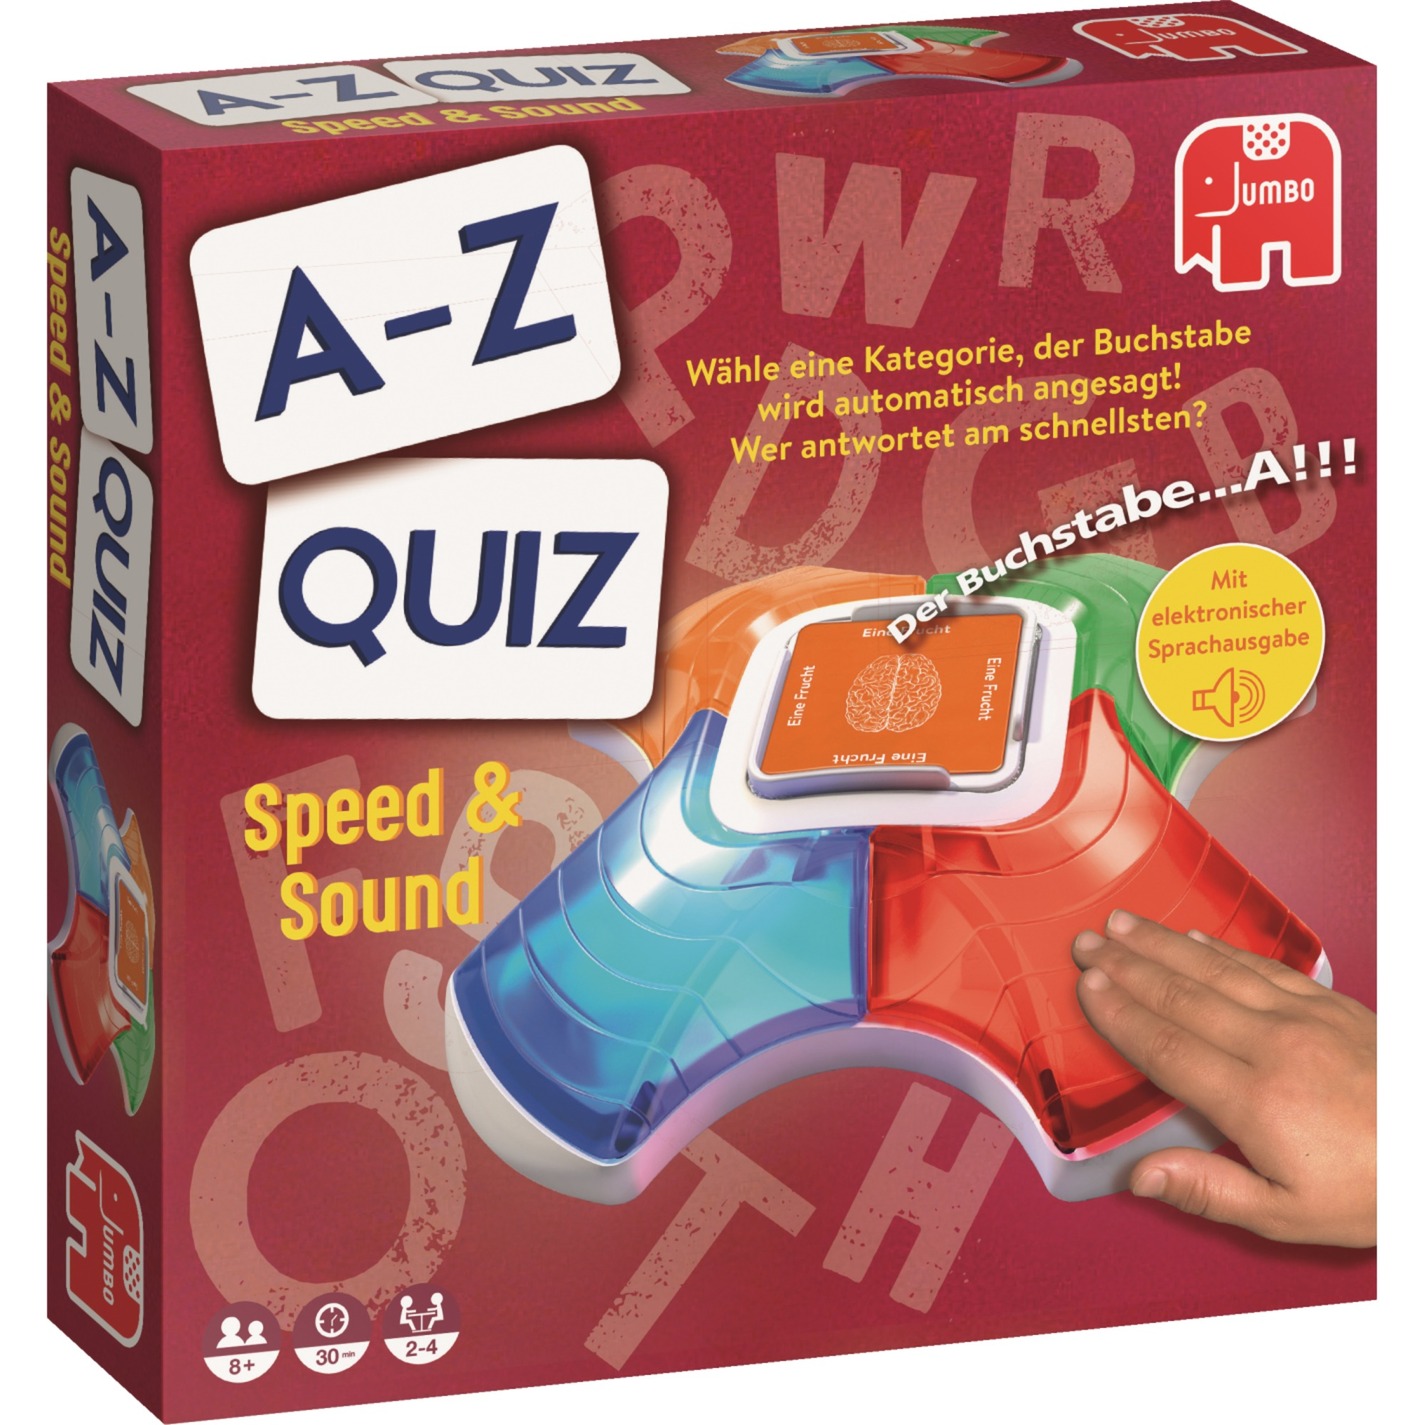 Image of Alternate - A-Z Quiz Speed & Sound, Quizspiel online einkaufen bei Alternate